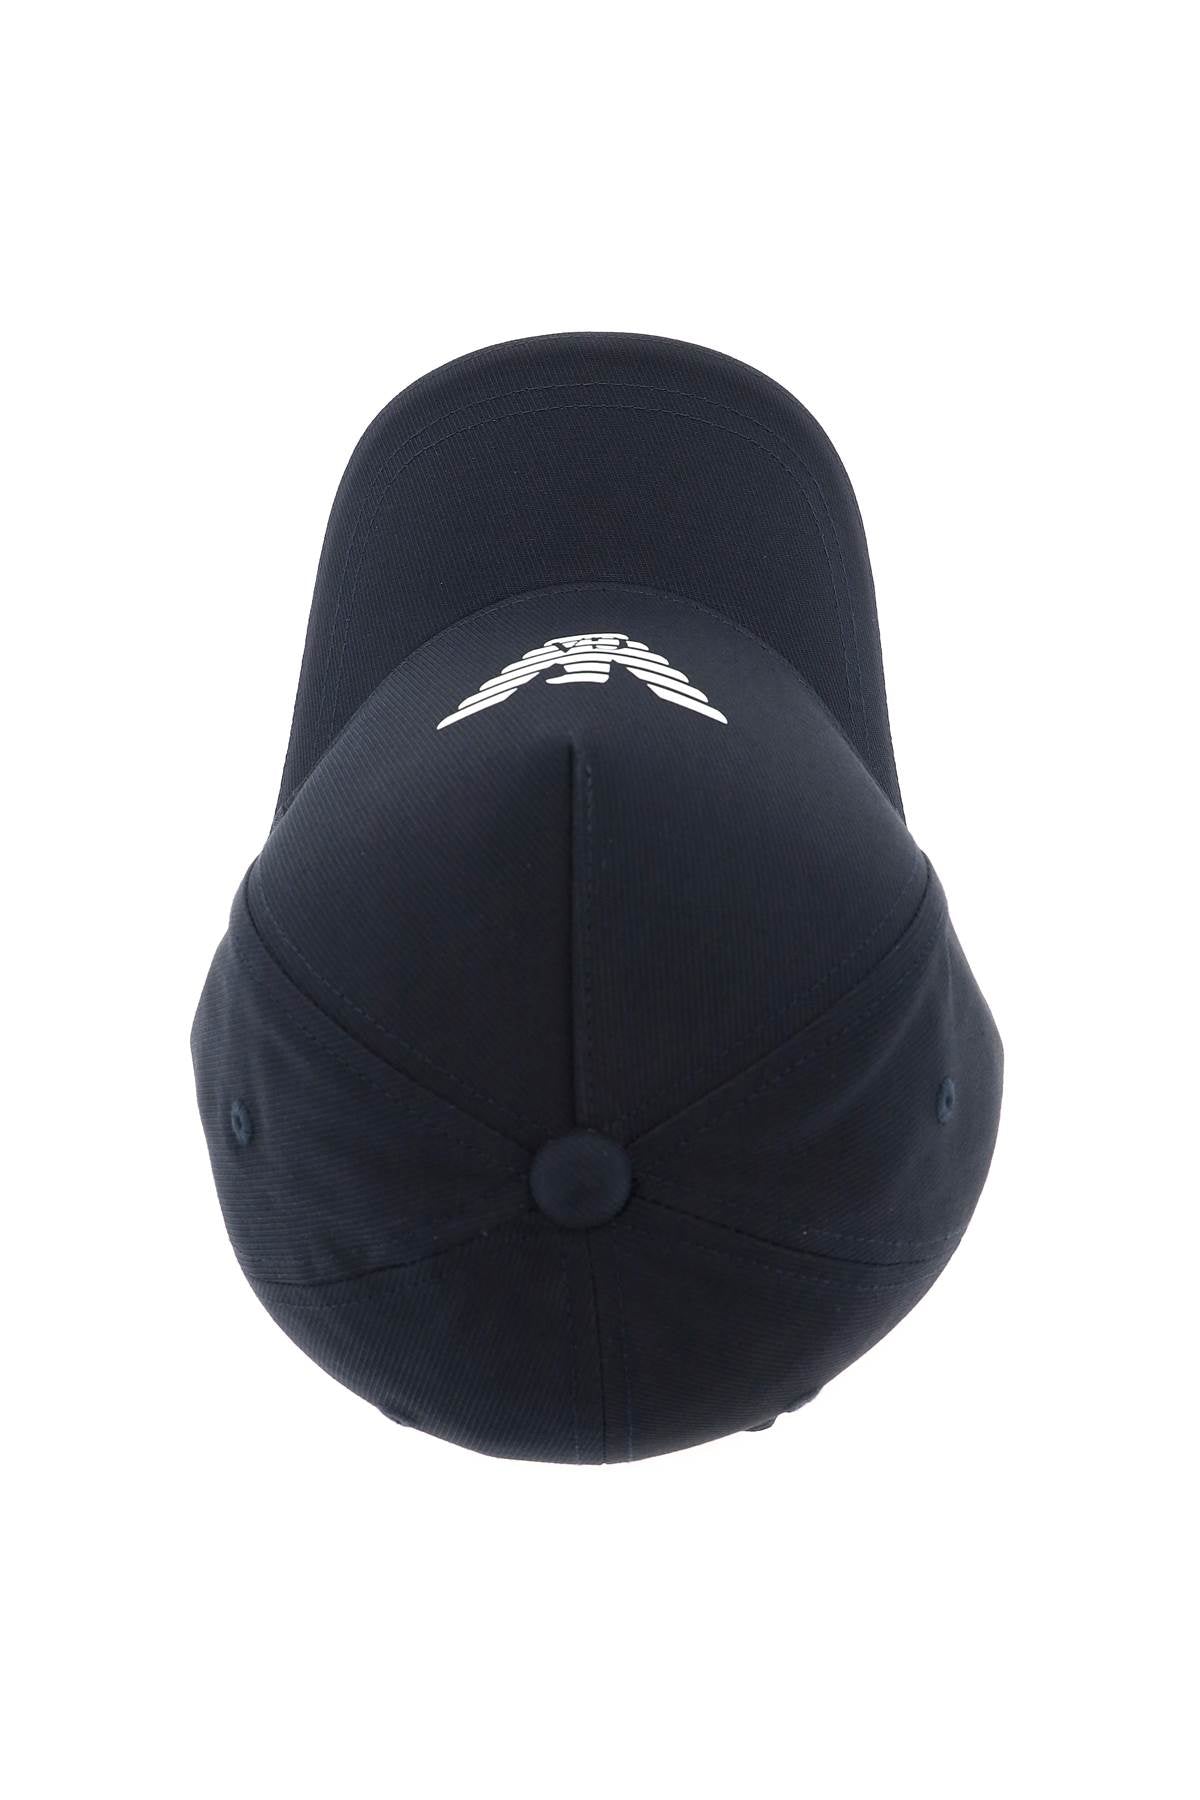 Emporio Armani Emporio armani baseball cap with logo